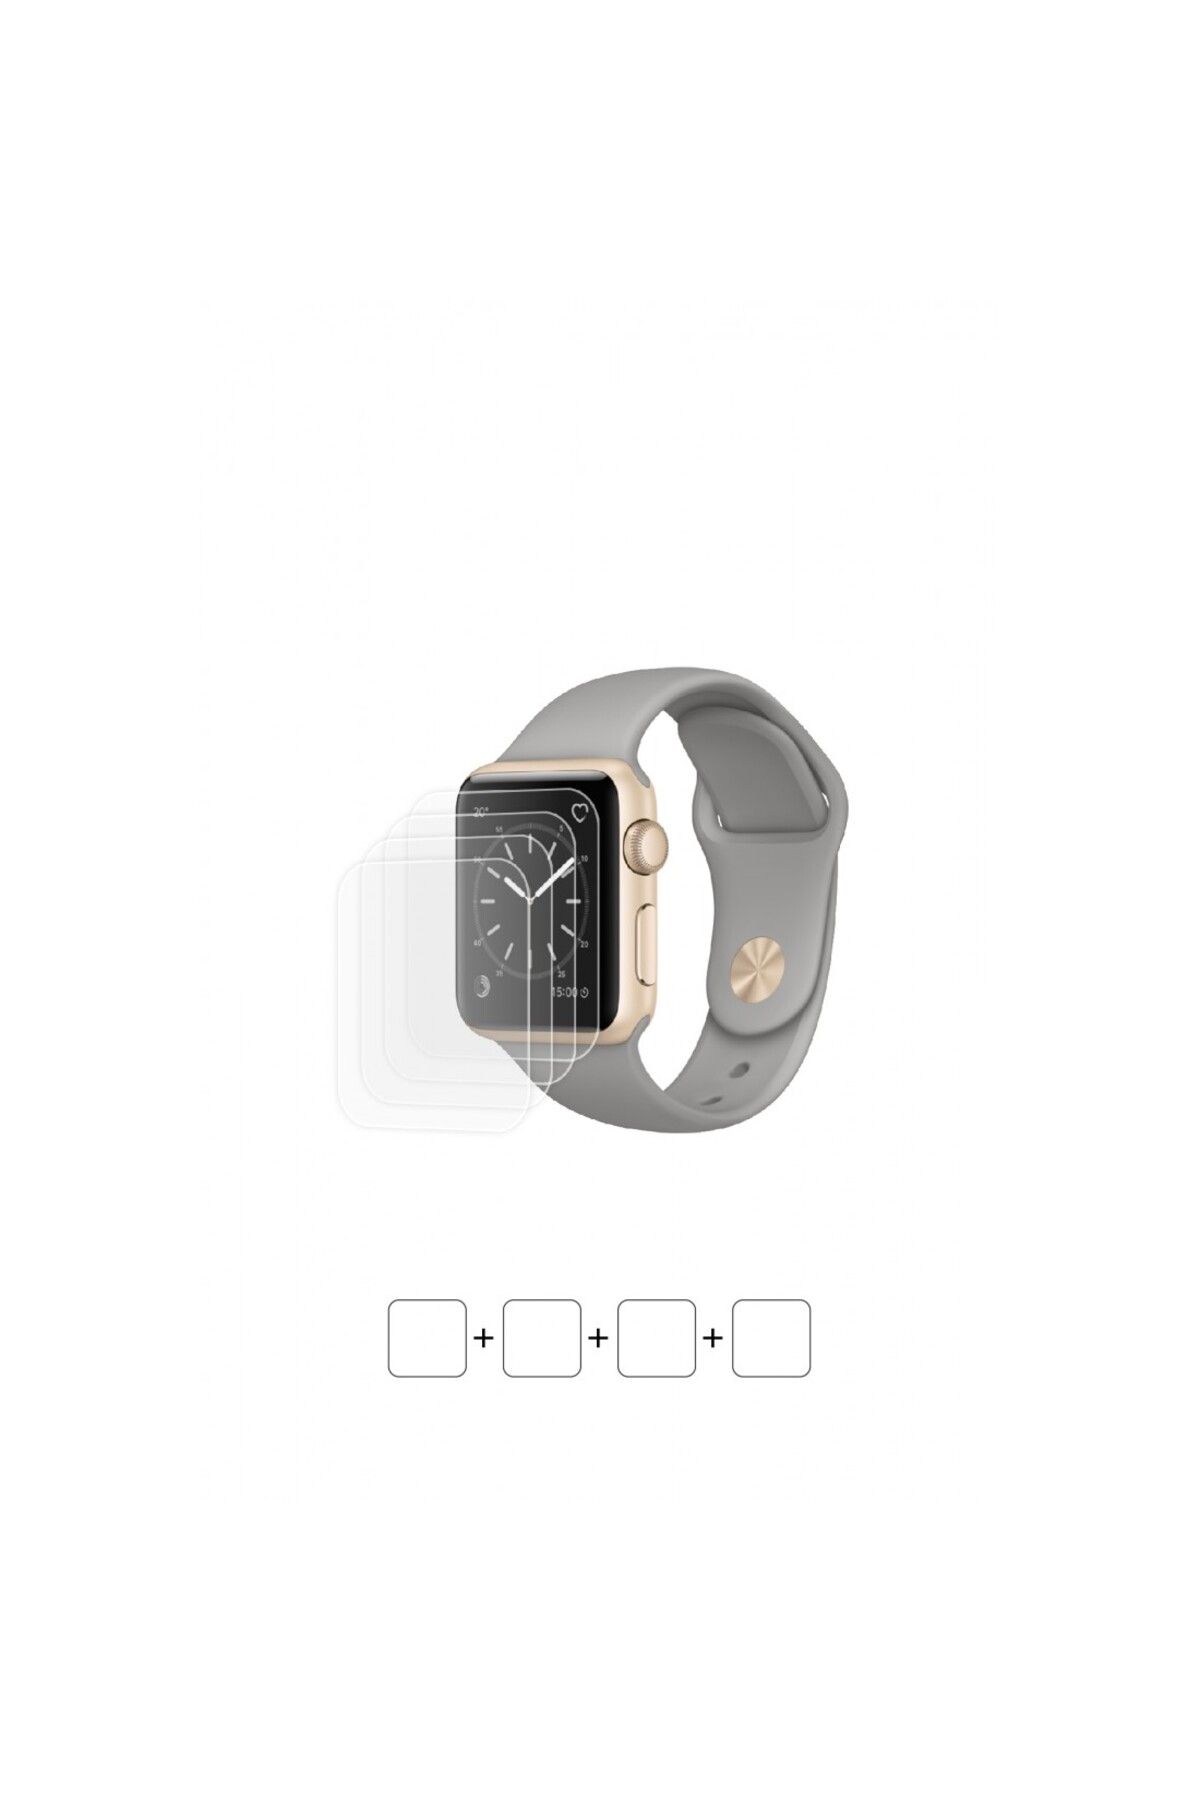 Wrapsol Apple Watch Series 1 38 mm Akıllı Saat Ekran Koruyucu Poliüretan Film